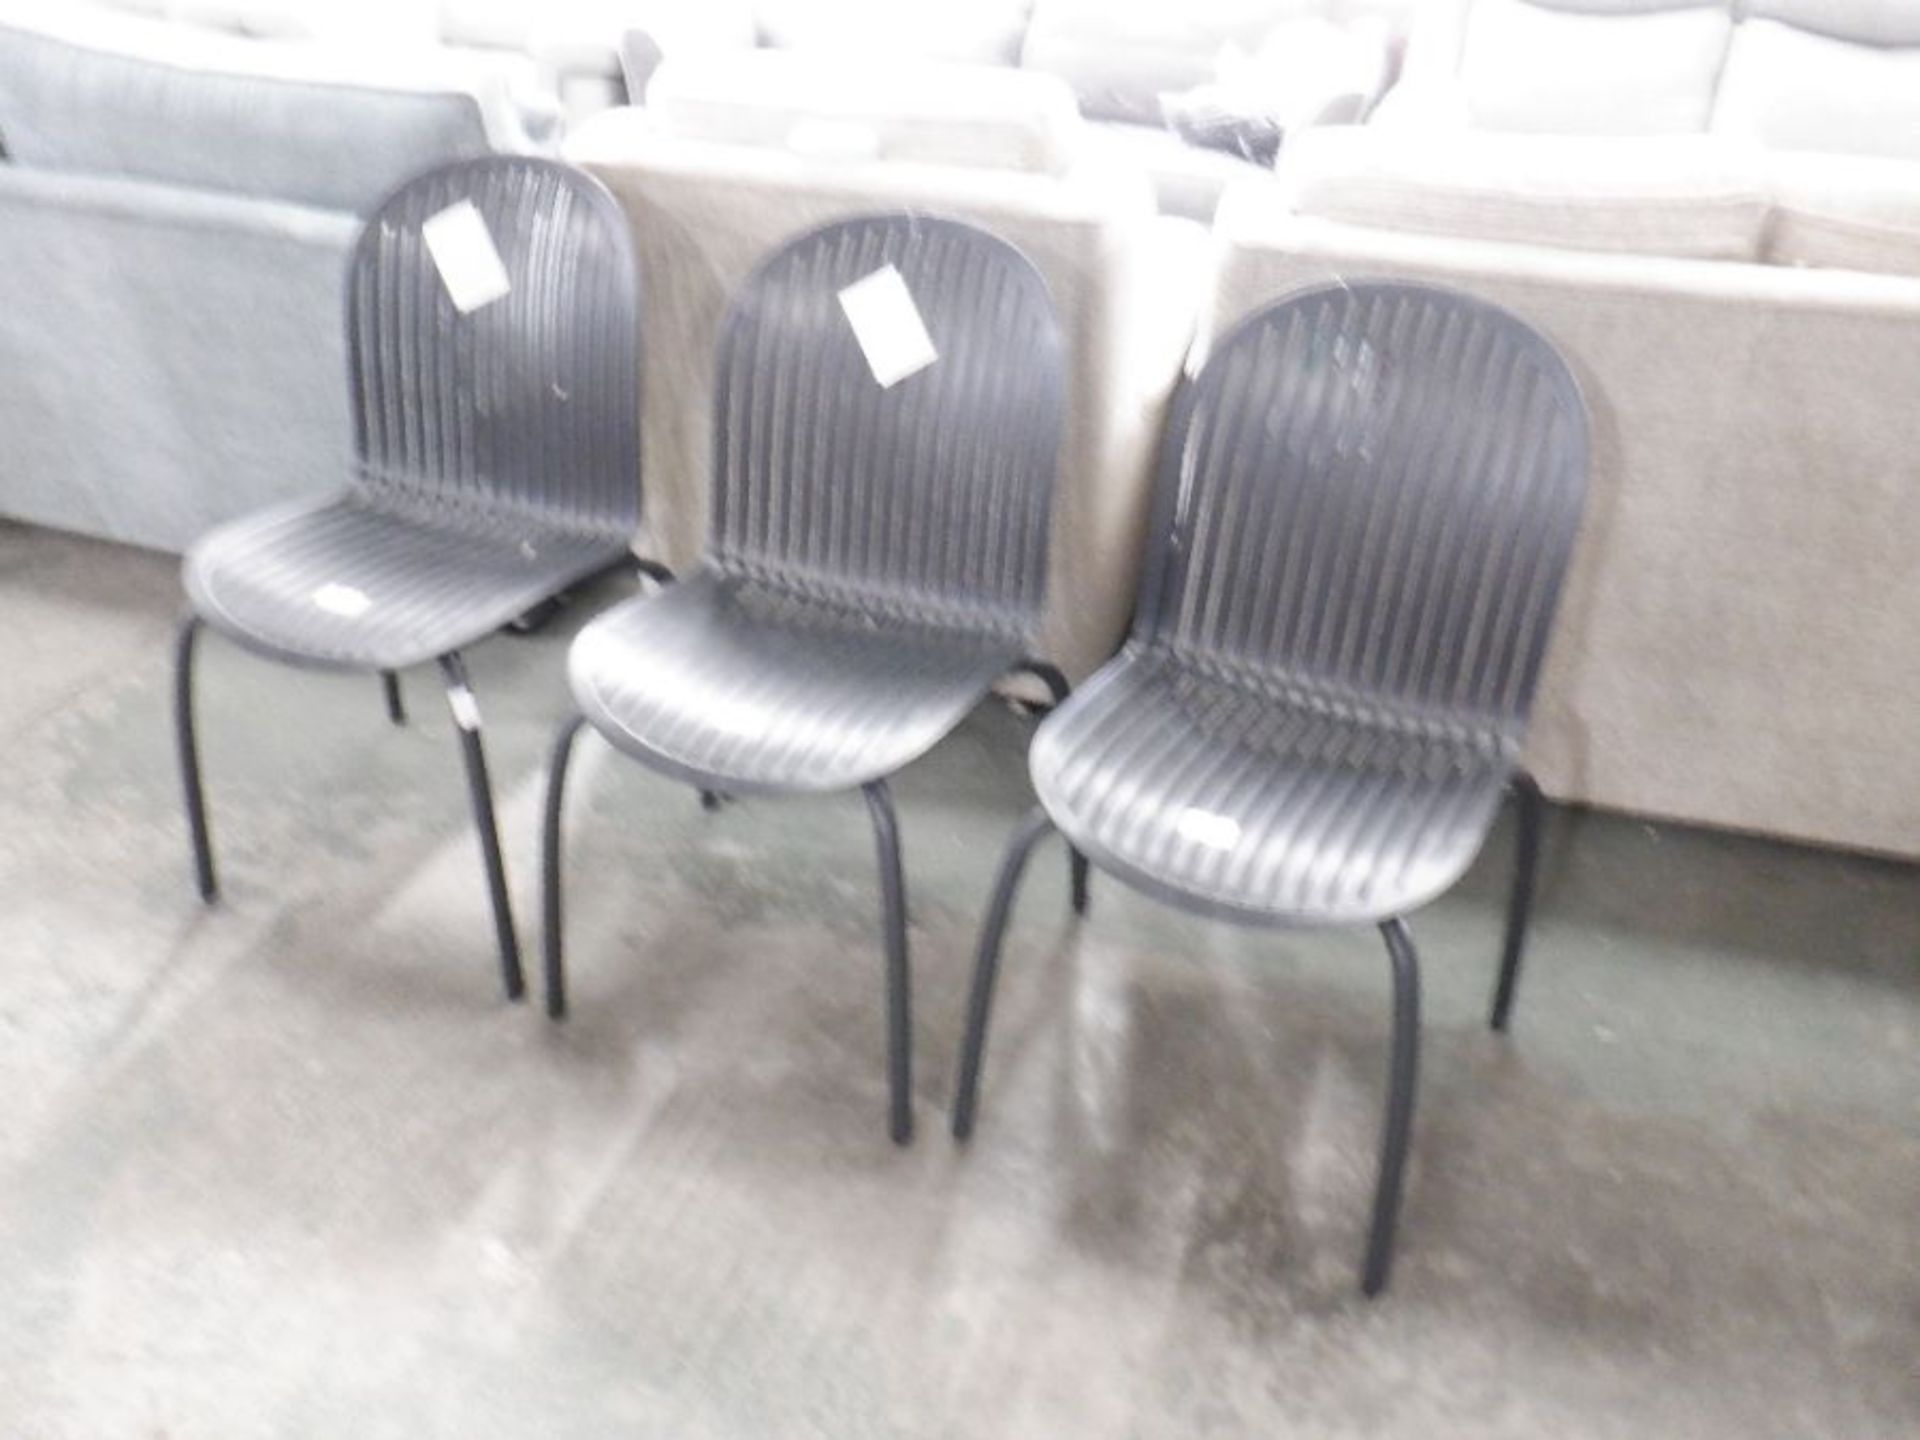 Metro Lane,Nardi Roulston Dinner Chair (SET OF 3) - Image 2 of 3